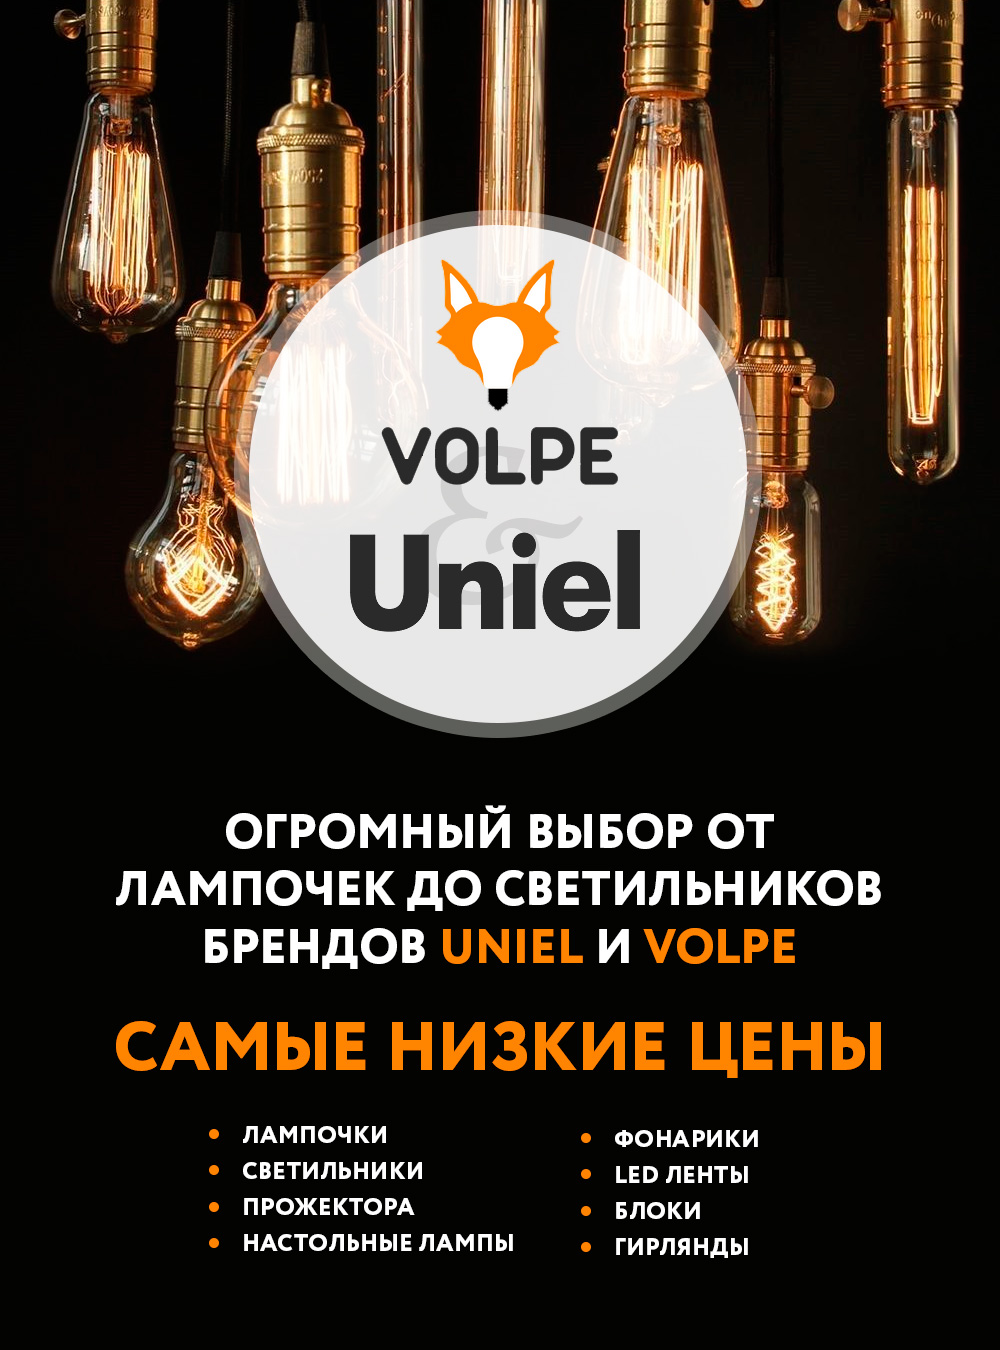 Лампы и светильники от брендов Uniel и Volpe